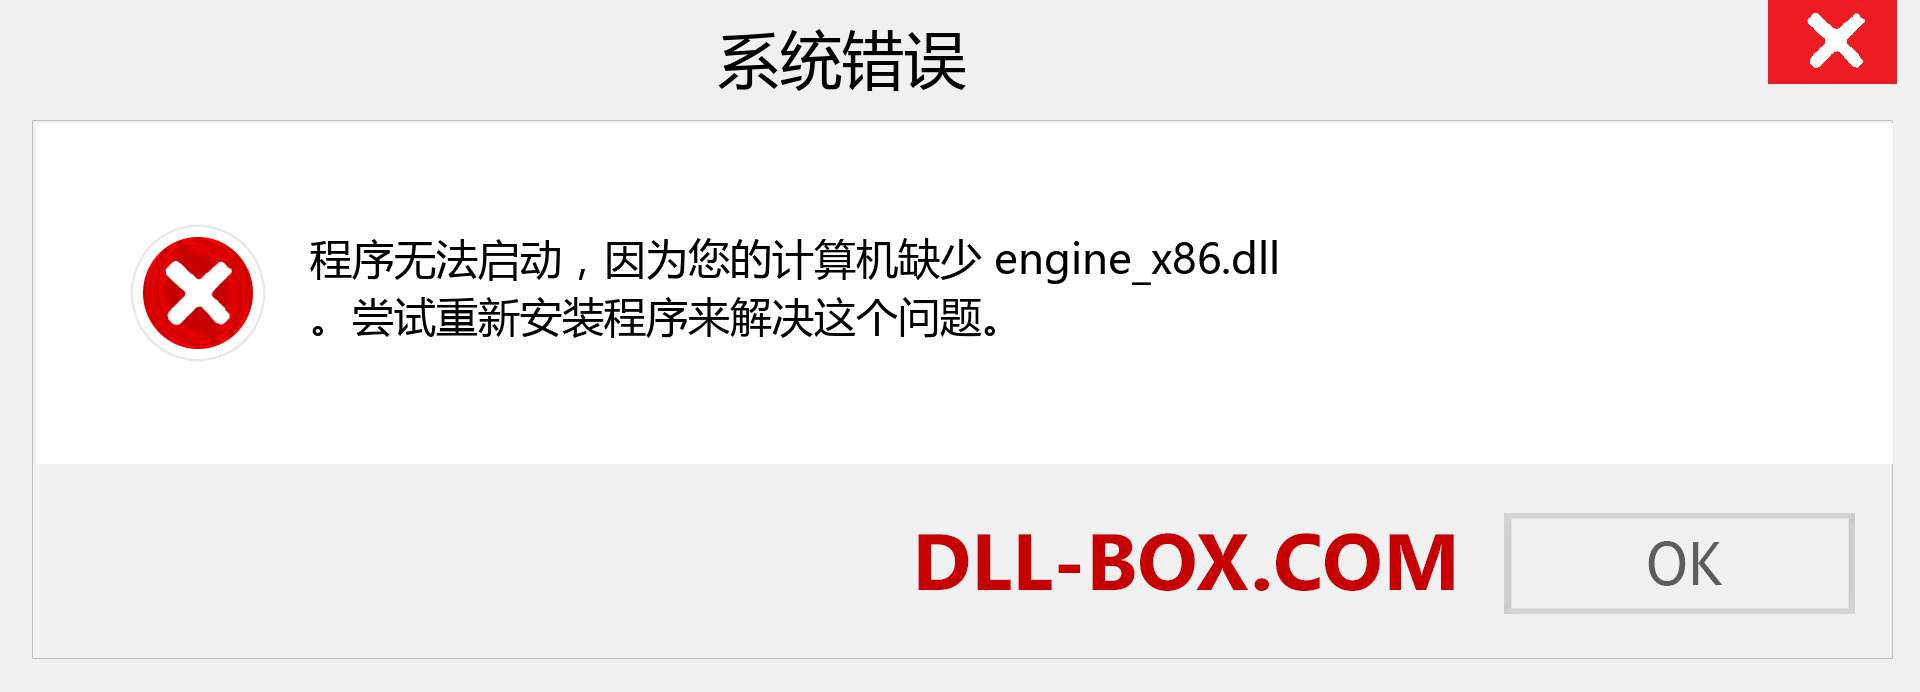 engine_x86.dll 文件丢失？。 适用于 Windows 7、8、10 的下载 - 修复 Windows、照片、图像上的 engine_x86 dll 丢失错误